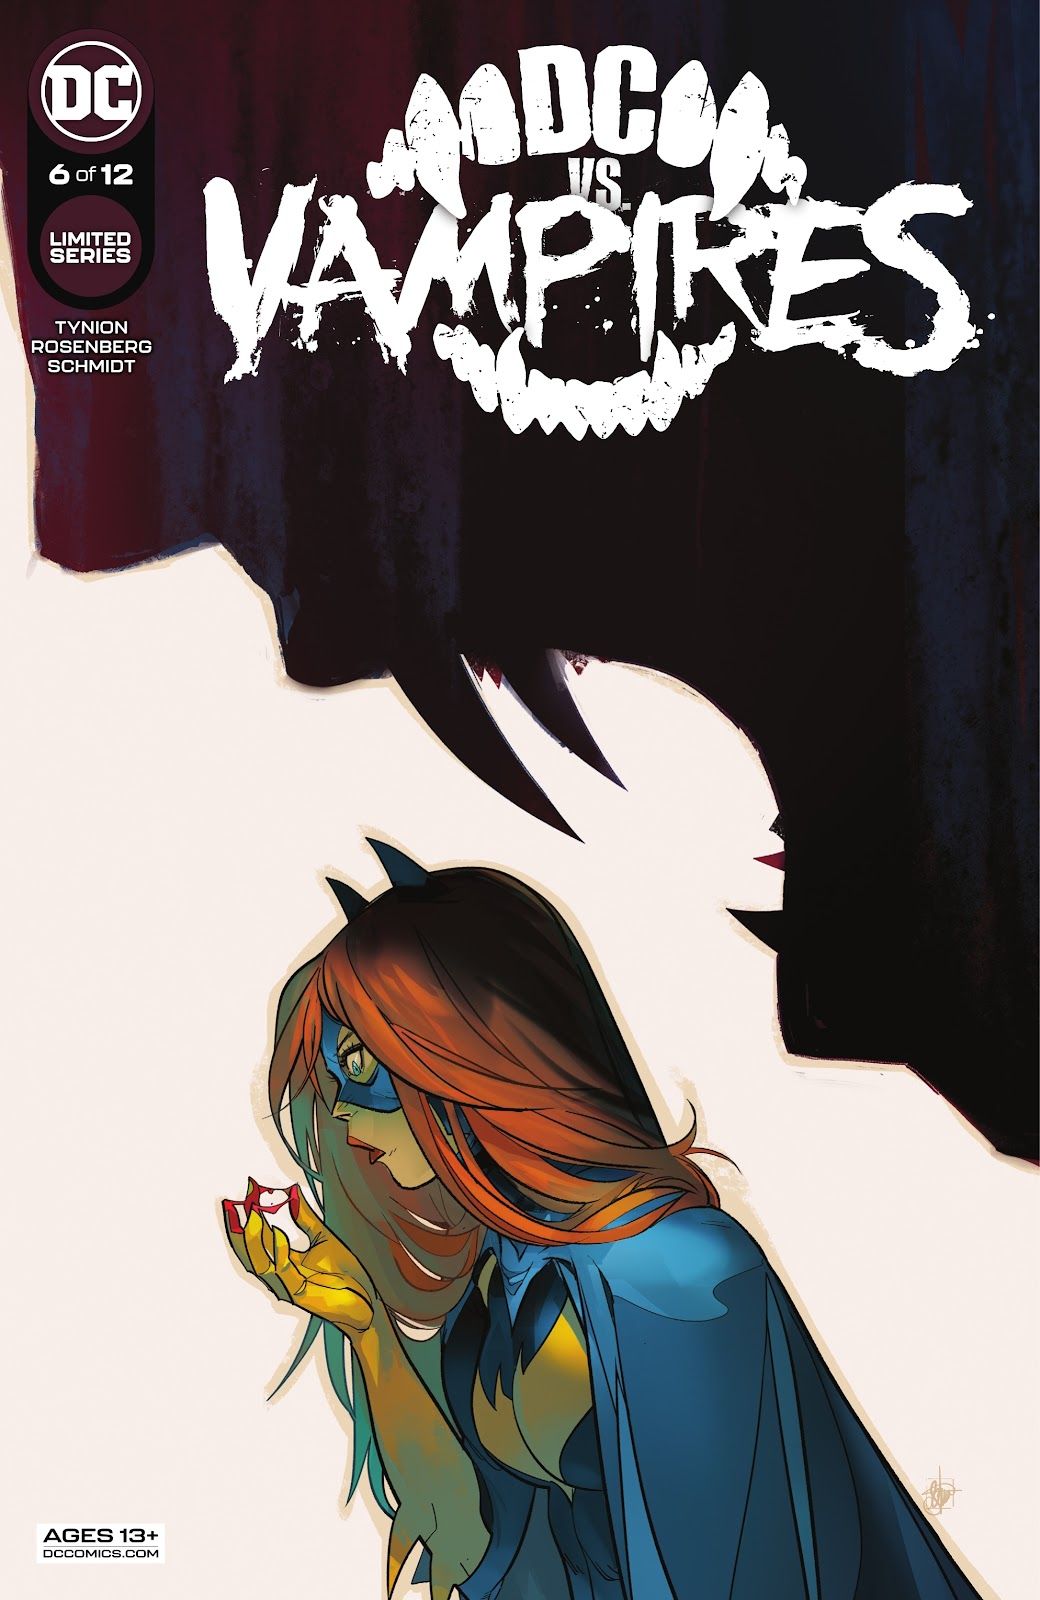 Cover of DC vs. Vampires #6